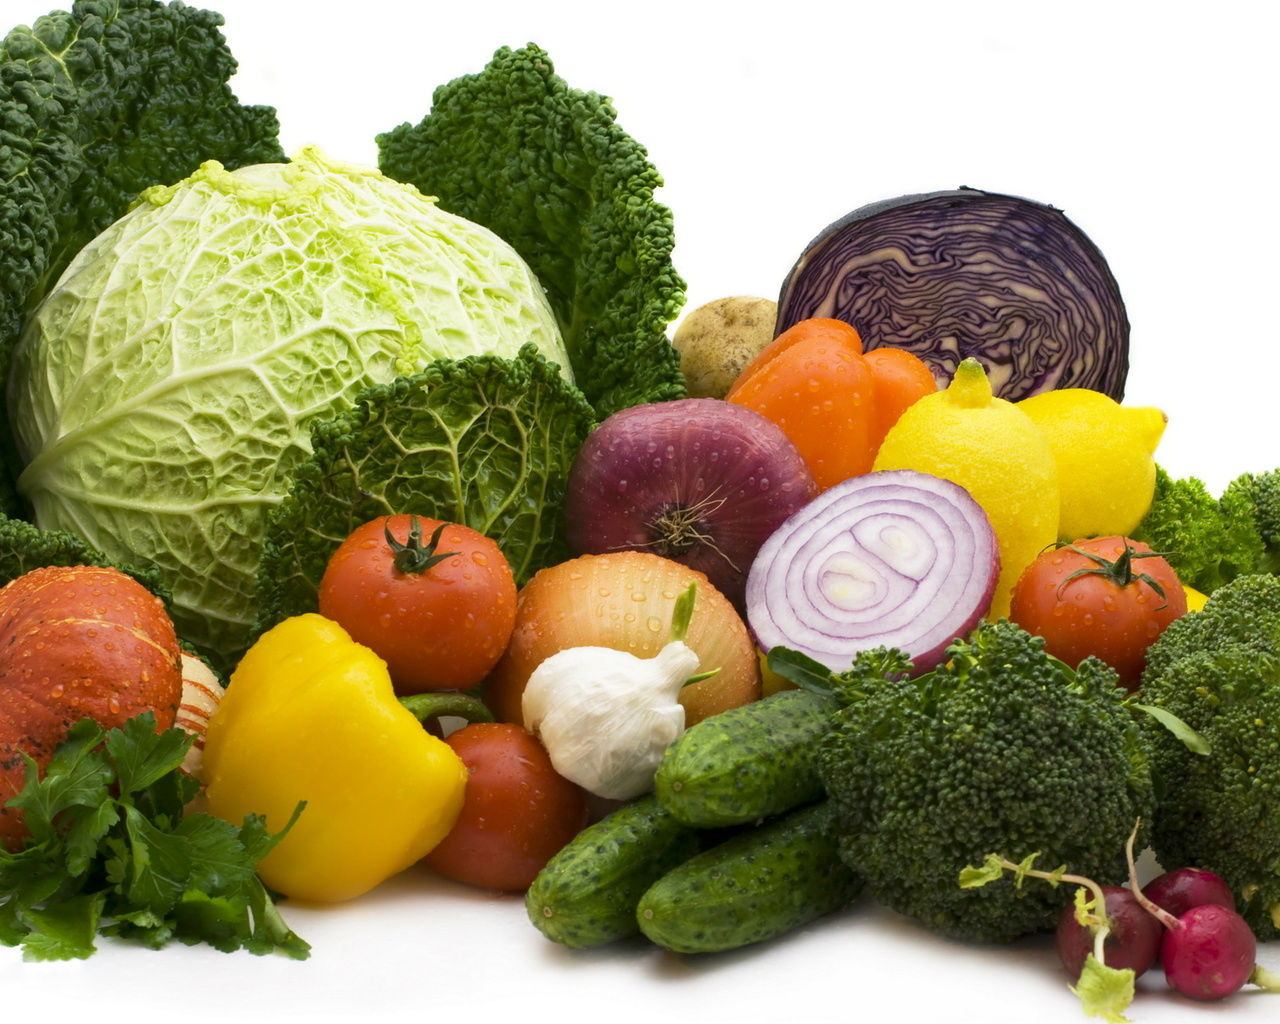 سبزیجات با کالری کم را بشناسید!